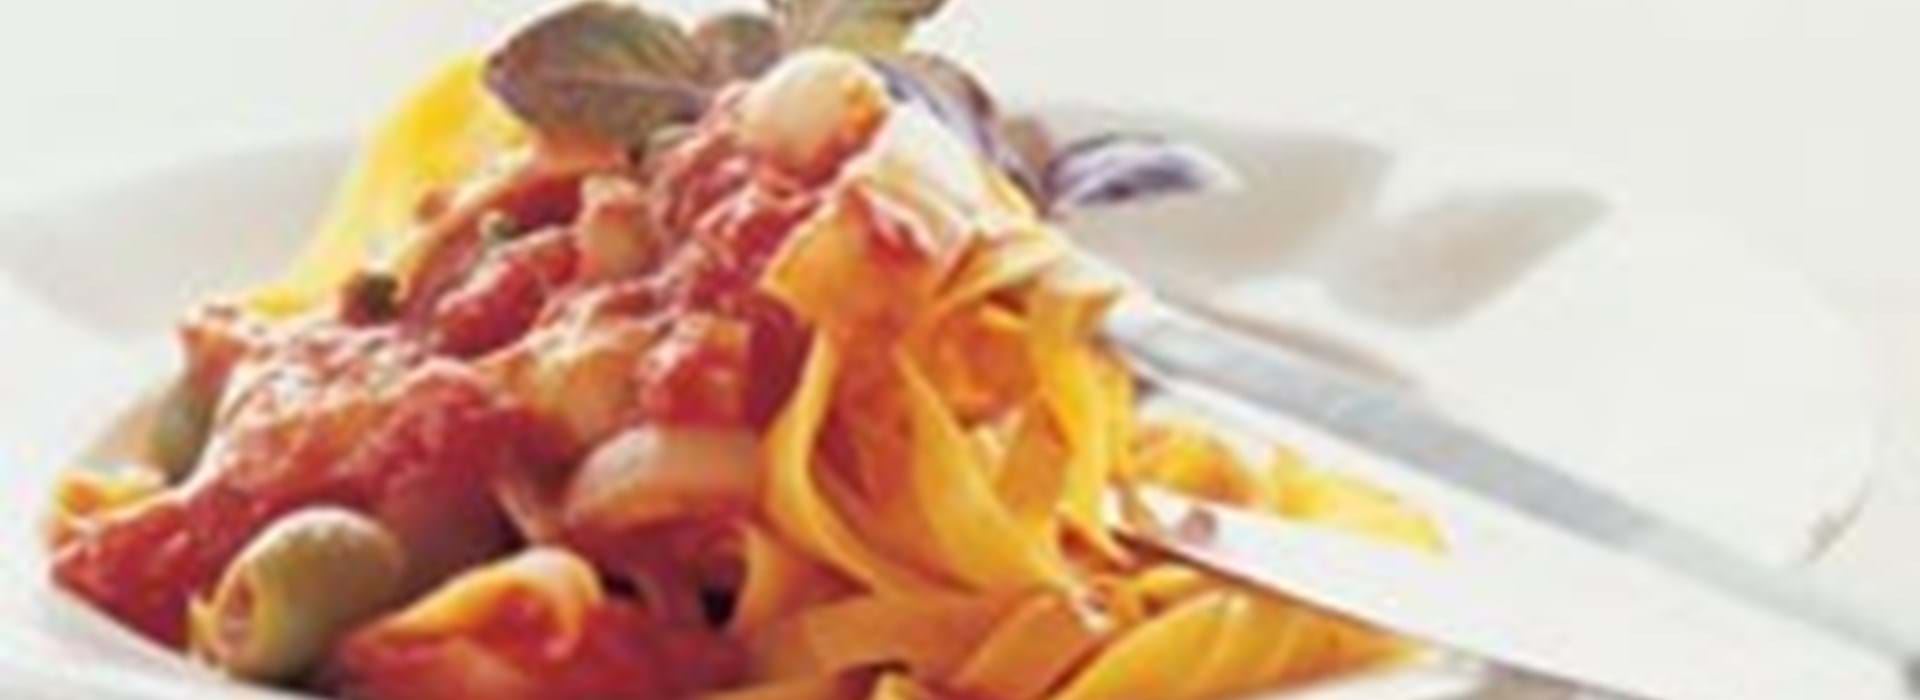 budbringer royalty Beroligende middel Pasta opskrift med oliven, tomat og løg - Se den her